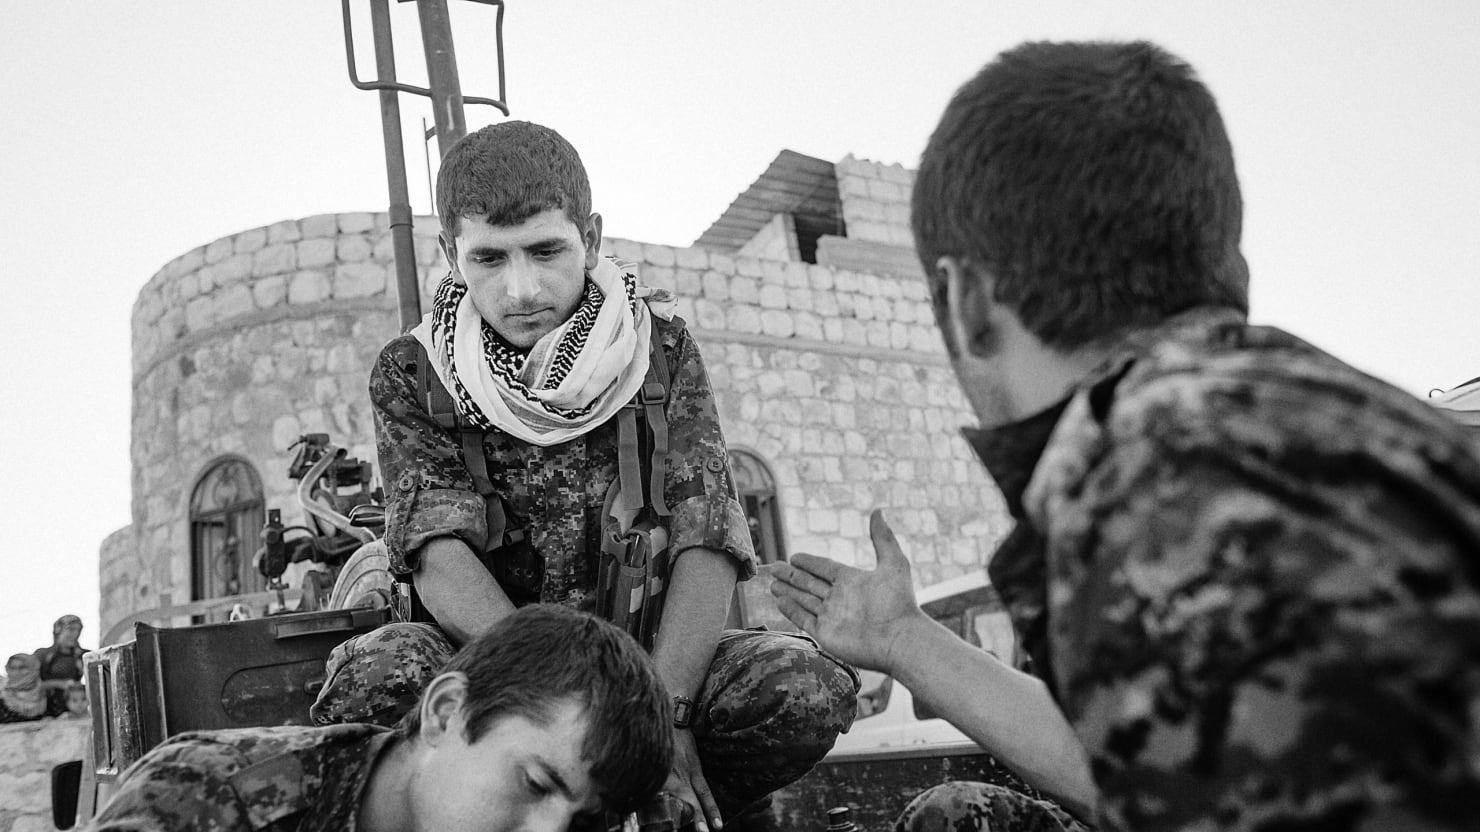 alfred-yaghobzadeh-photography-battle-for-kobani-turkey-syria-border